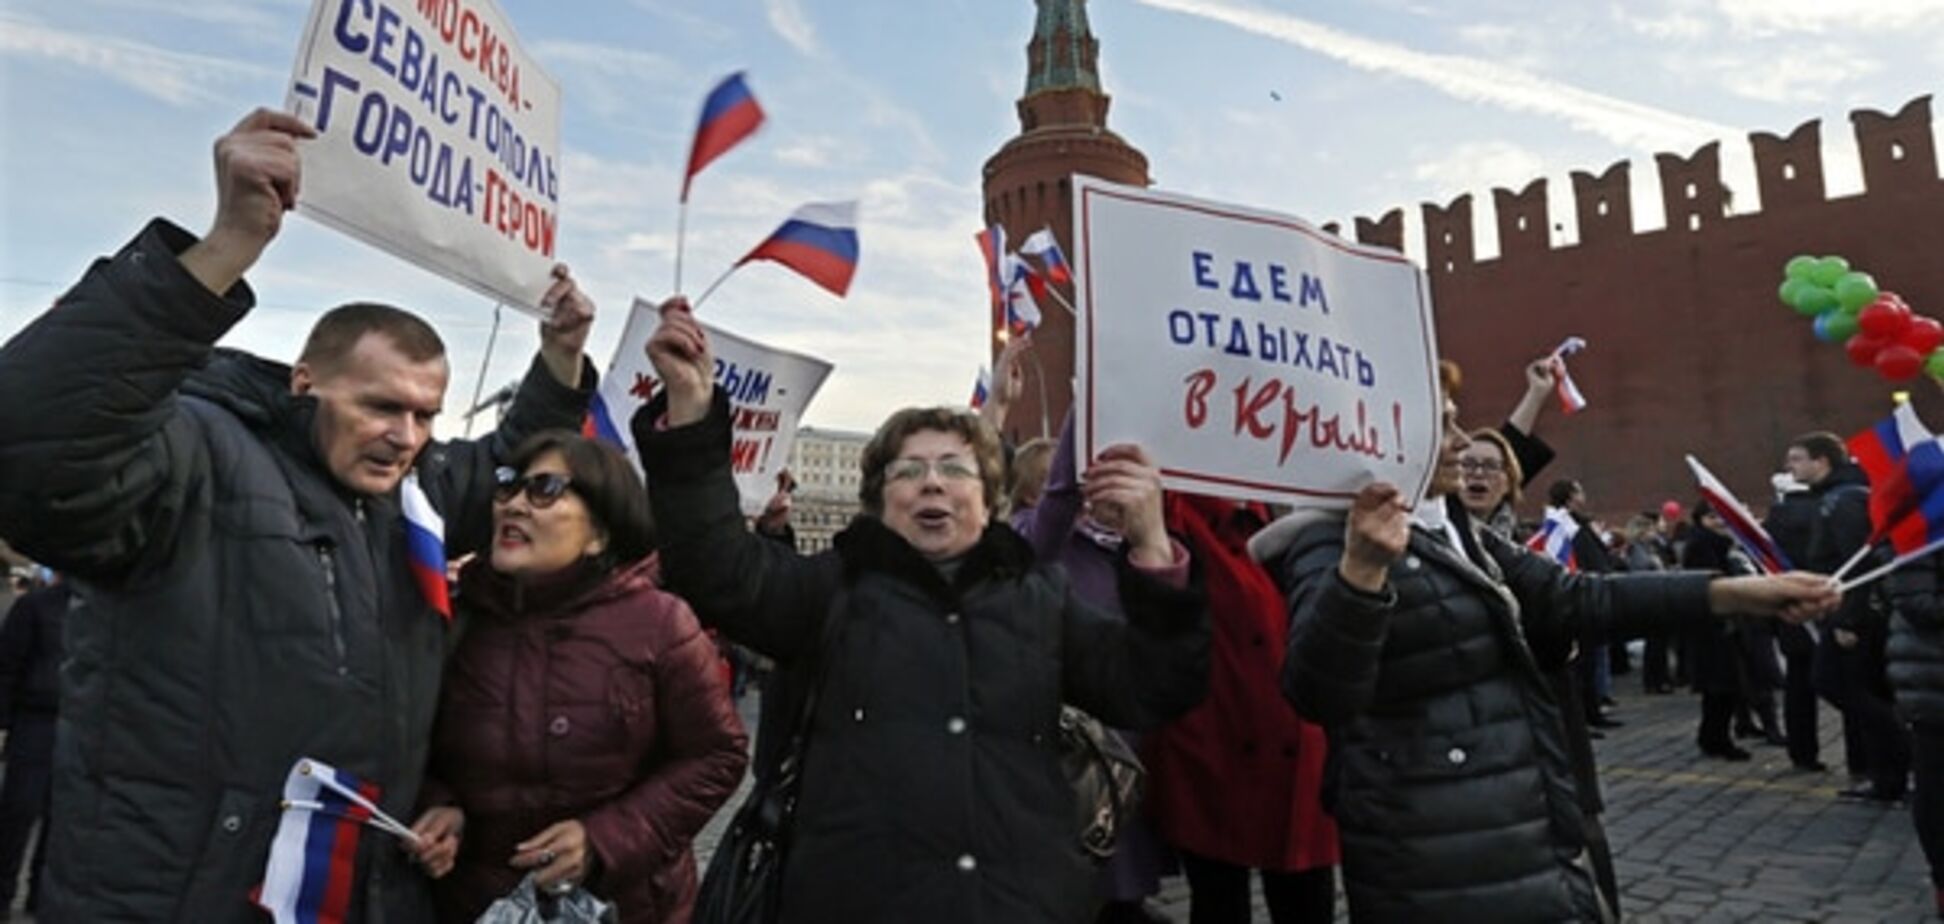 Портников: когда после свержения Путина вернут Крым, россияне будут скрежетать зубами